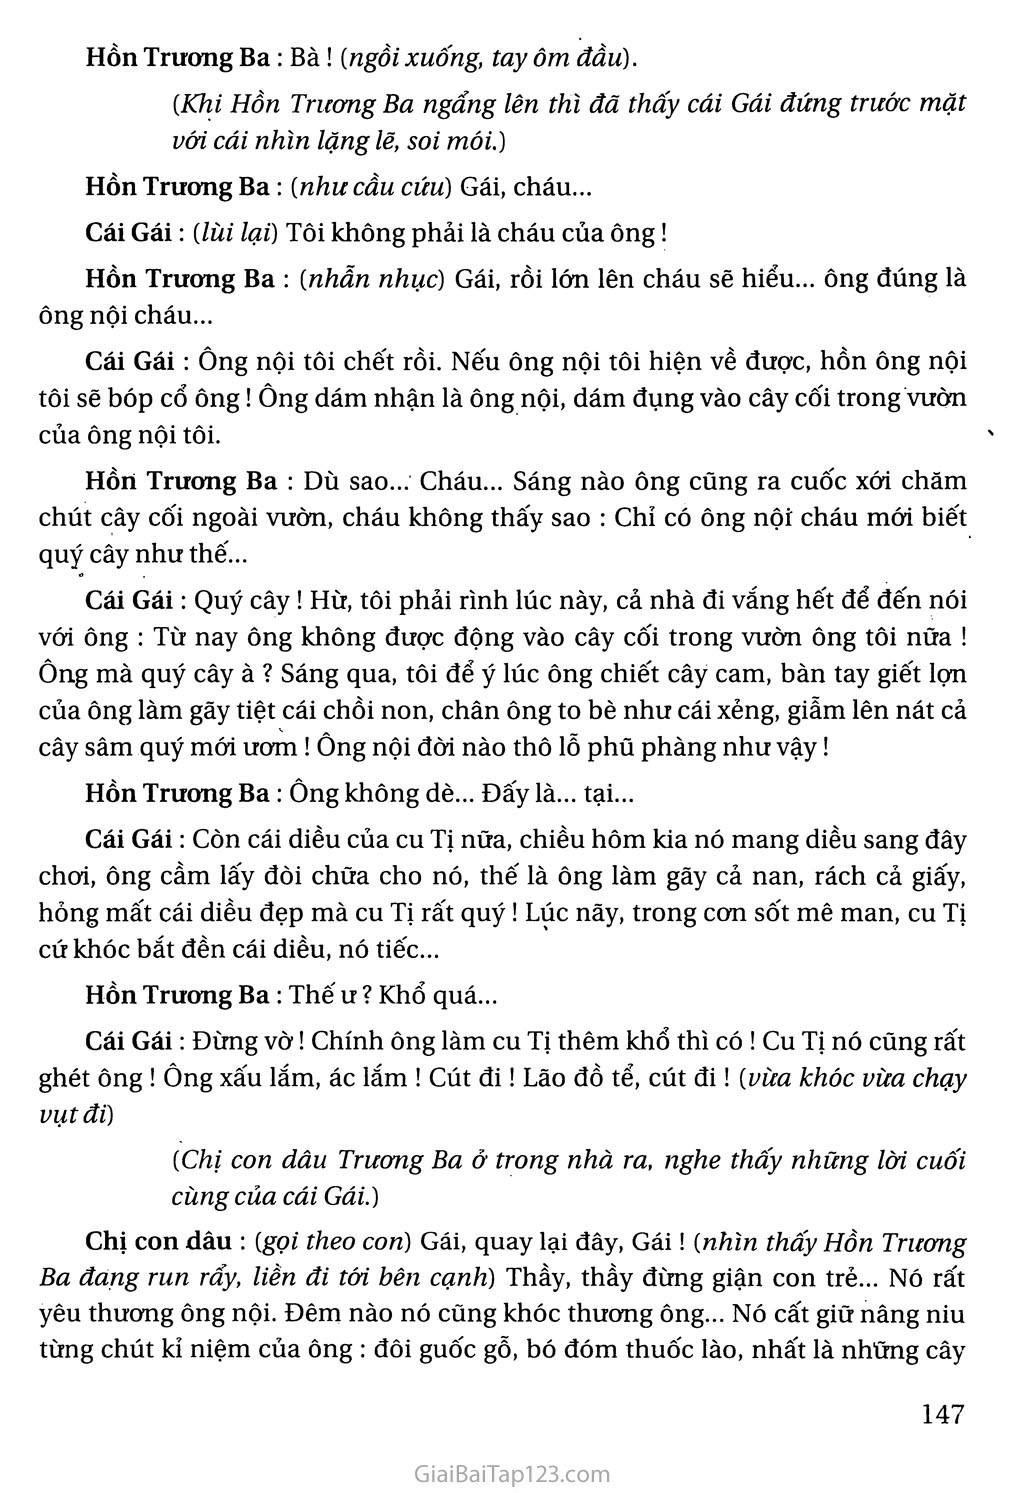 Hồn Trương Ba, da hàng thịt (trích) trang 6